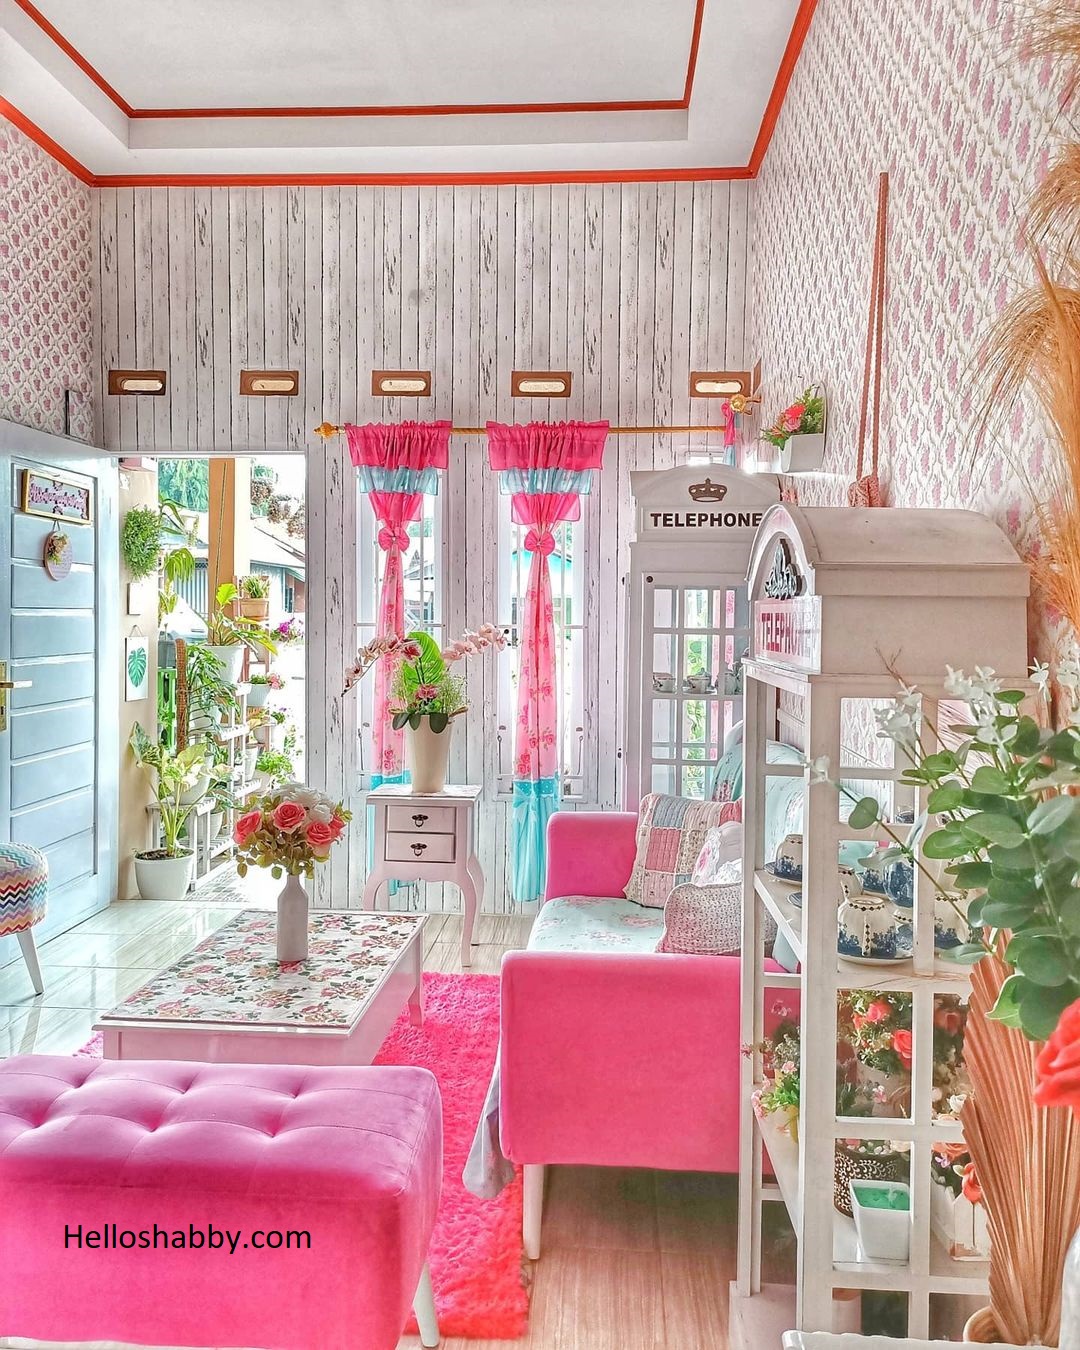 6 Ruang Tamu Rumah Type 36 Warna Pink Paling Cantik Mana Favoritmu